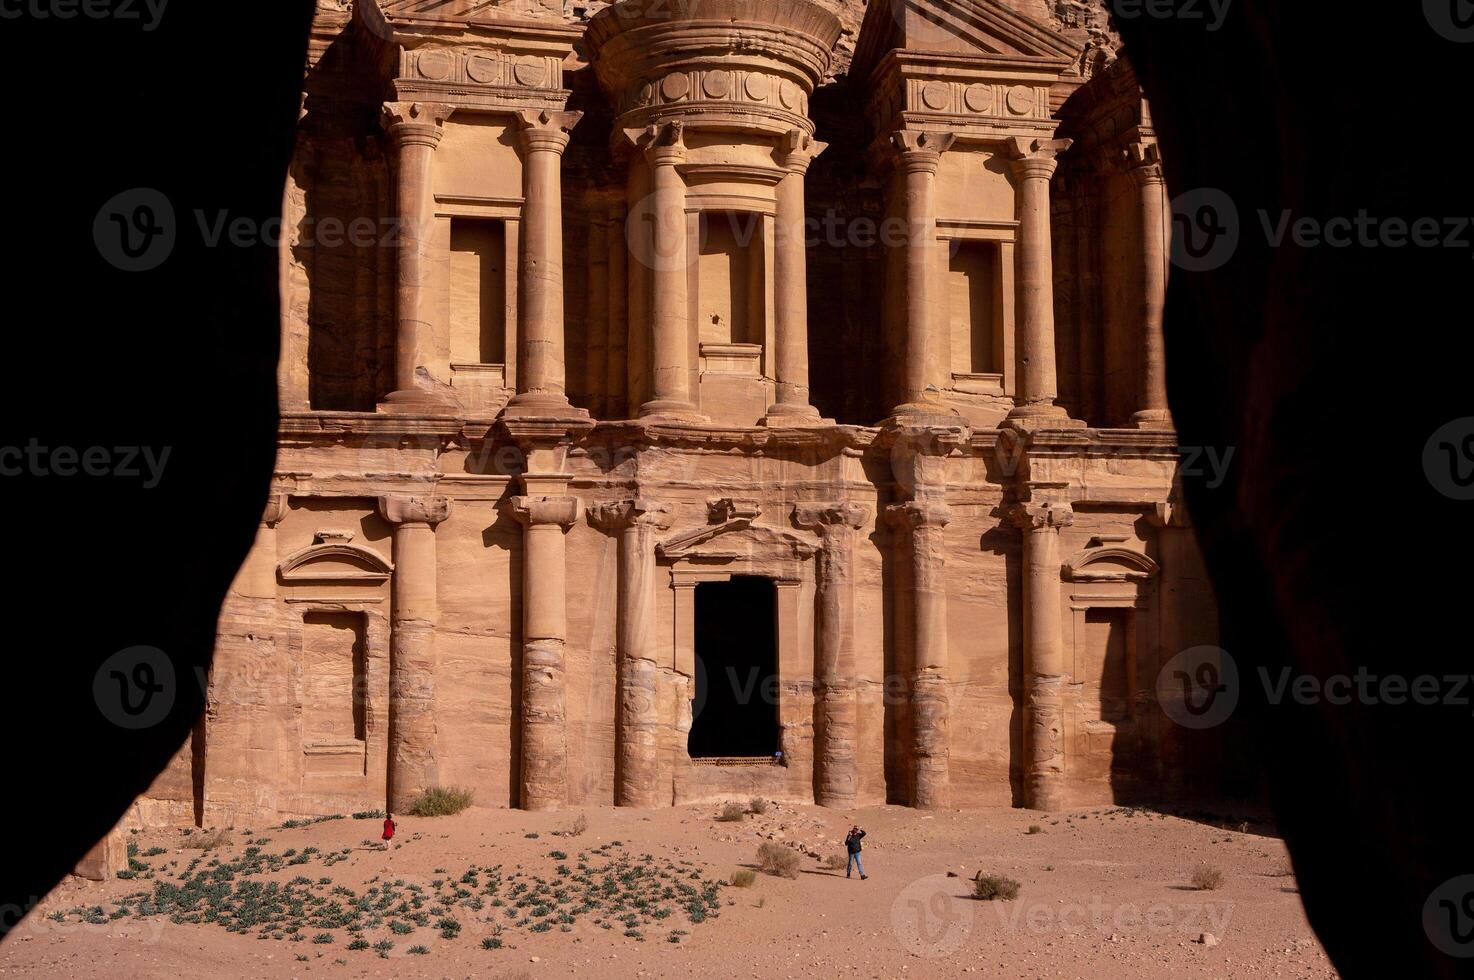 belleza de rocas y antiguo arquitectura en petra, Jordán. antiguo templo en petra, Jordán. foto